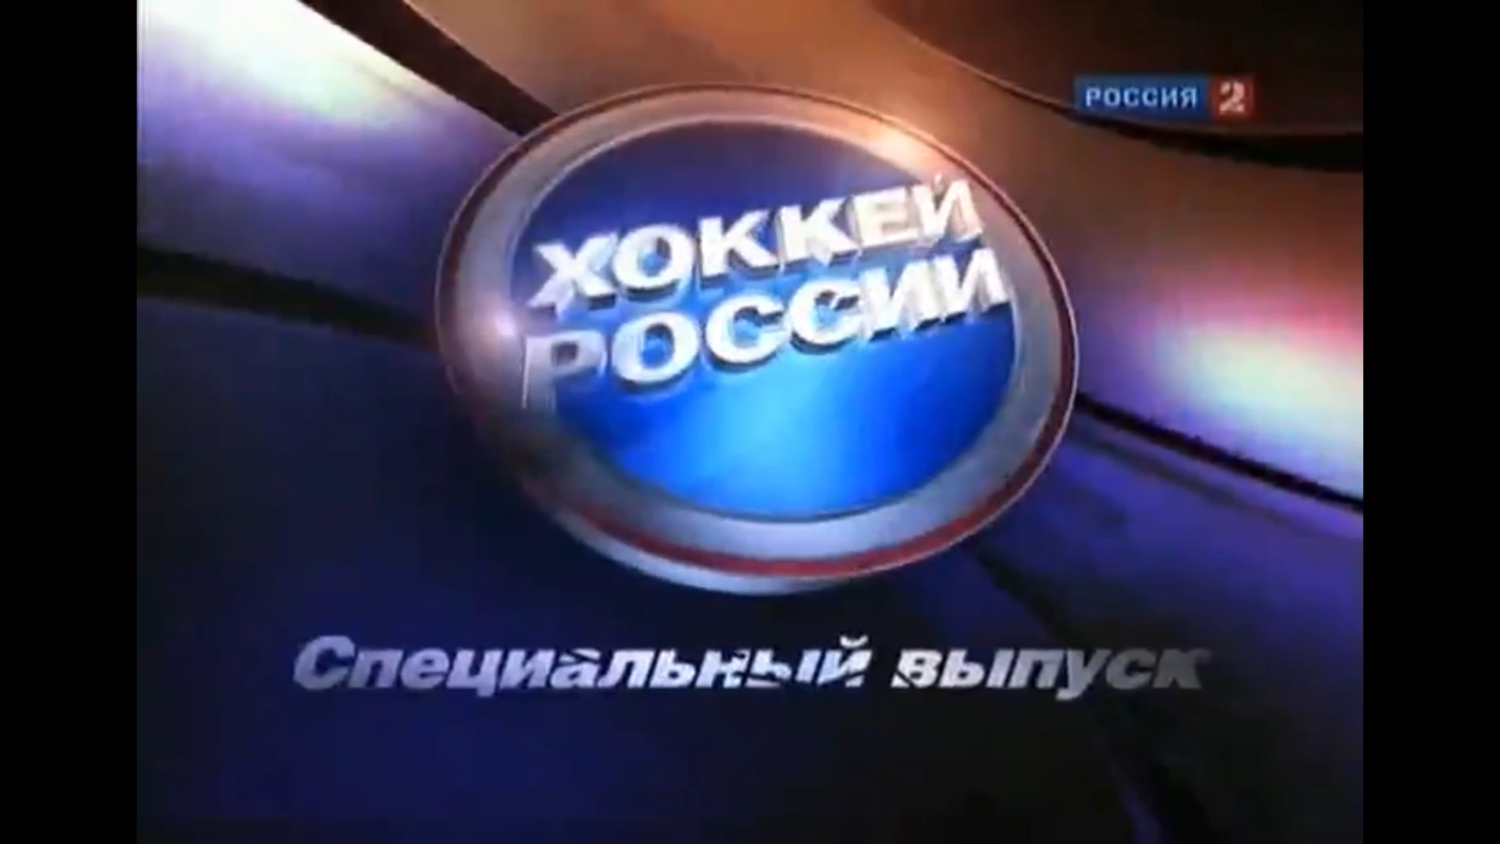 Хоккей России. Специальный выпуск. Эфир от 2011/01/08